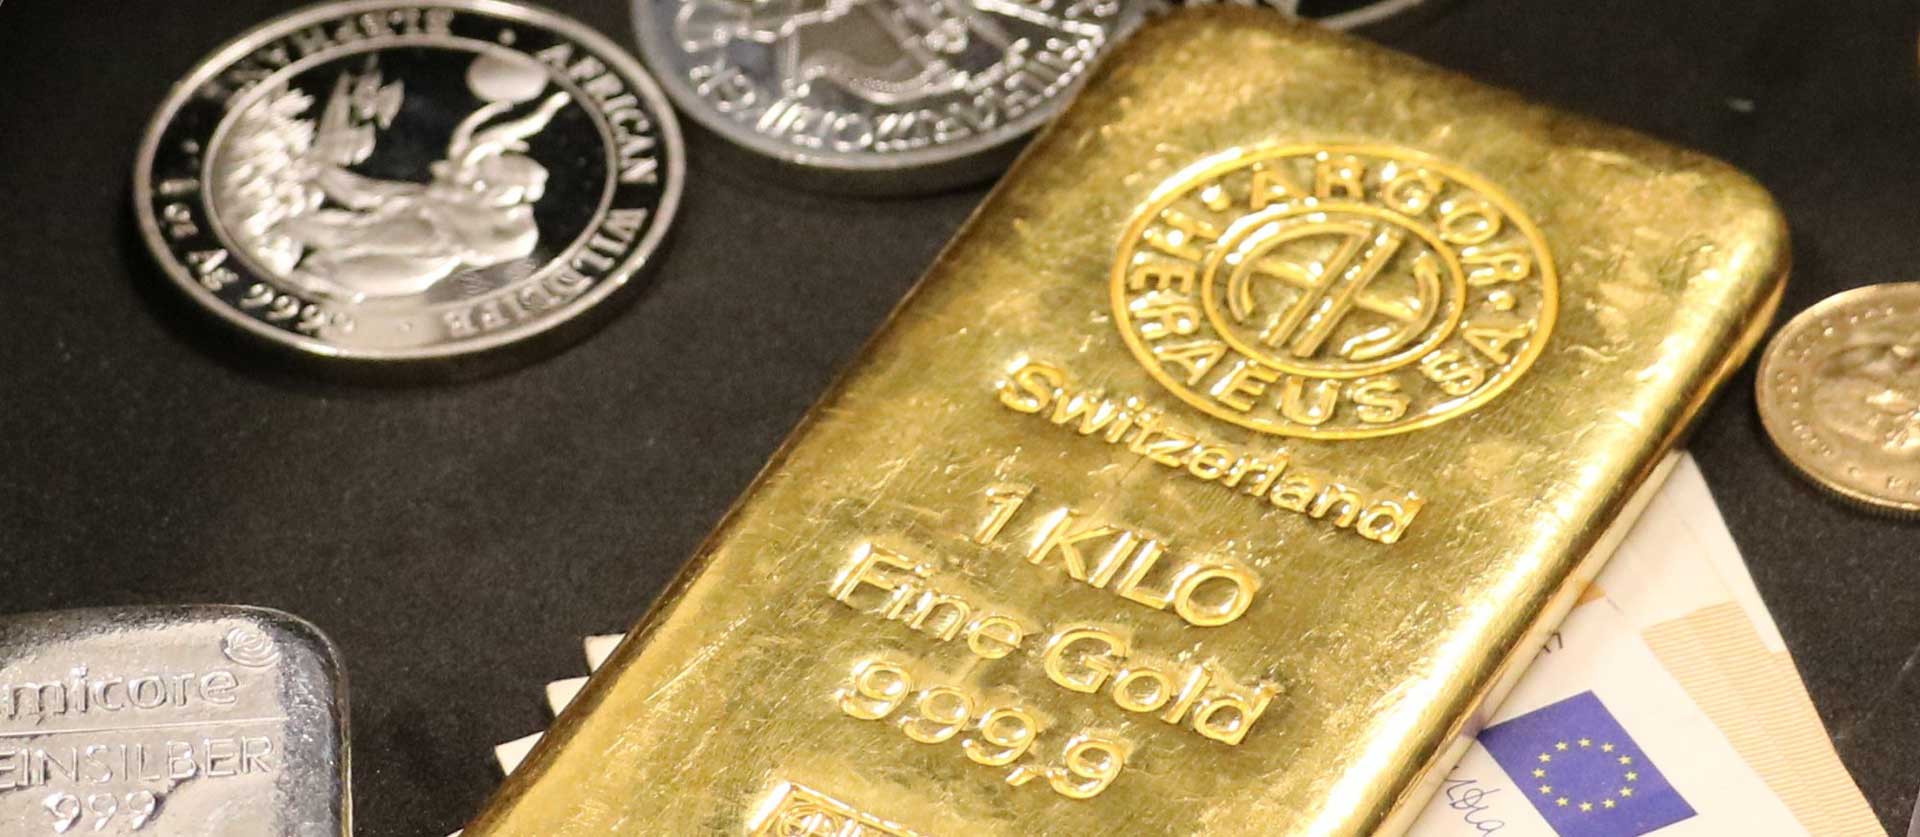 Konijn Verloren hart Schat Goudwisselkantoor Amsterdam | Gratis taxatie goud en zilver